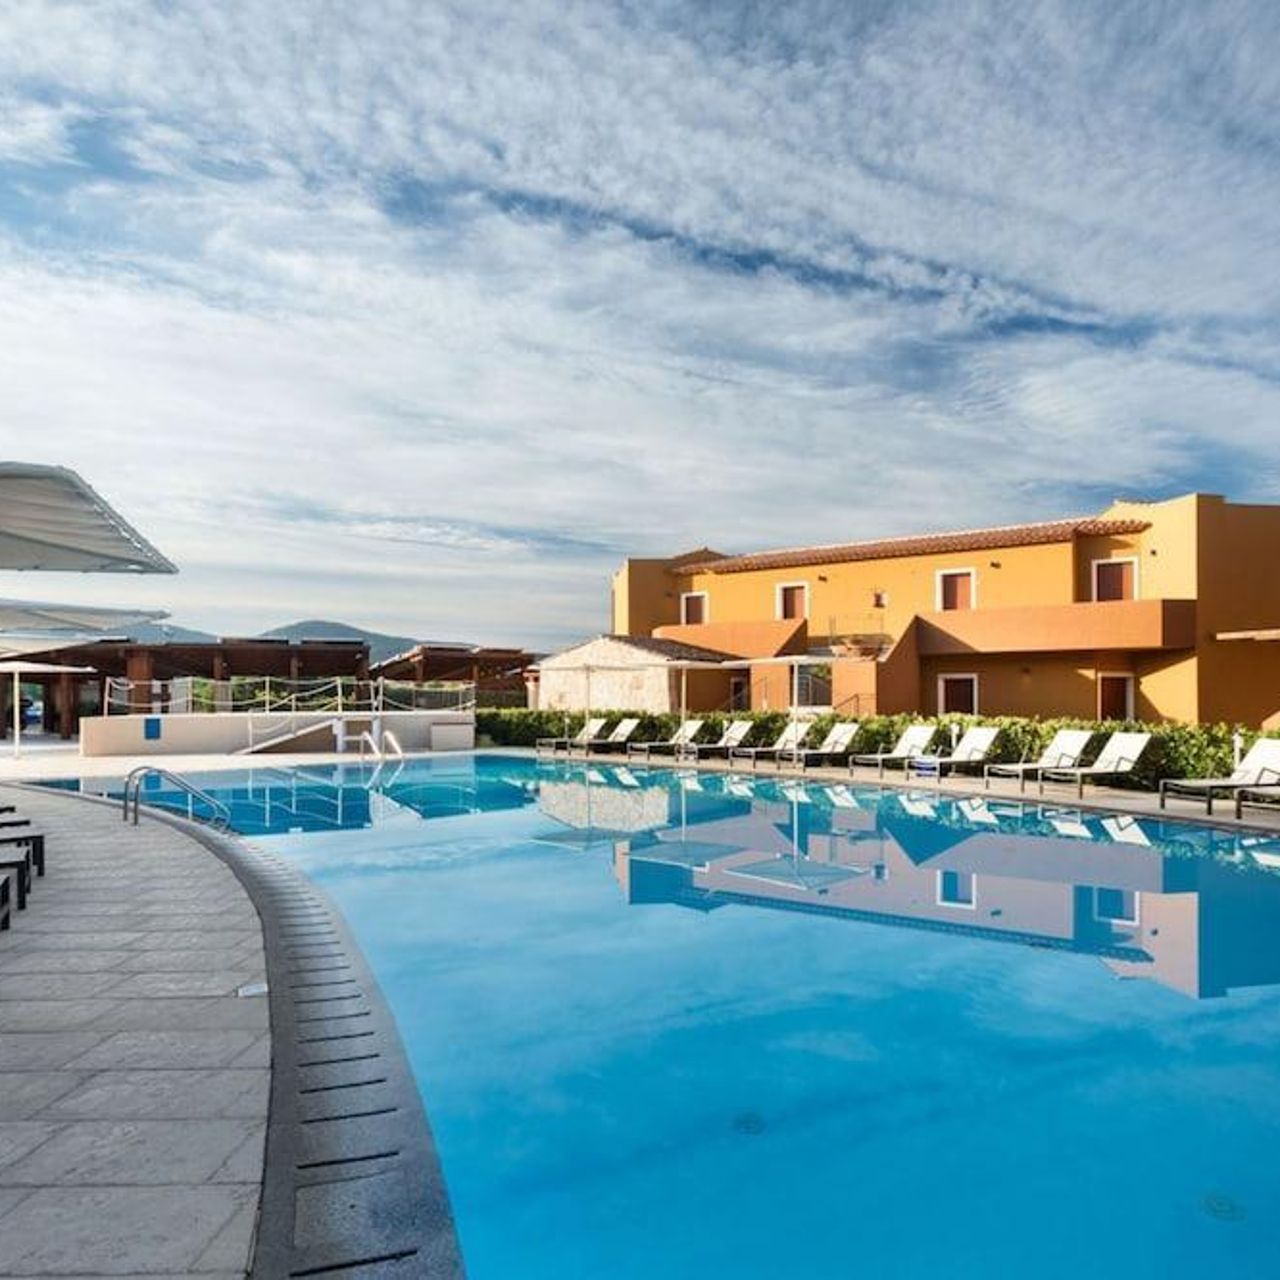 Hotel Terradimare Resort & Spa - San Teodoro - HOTEL INFO